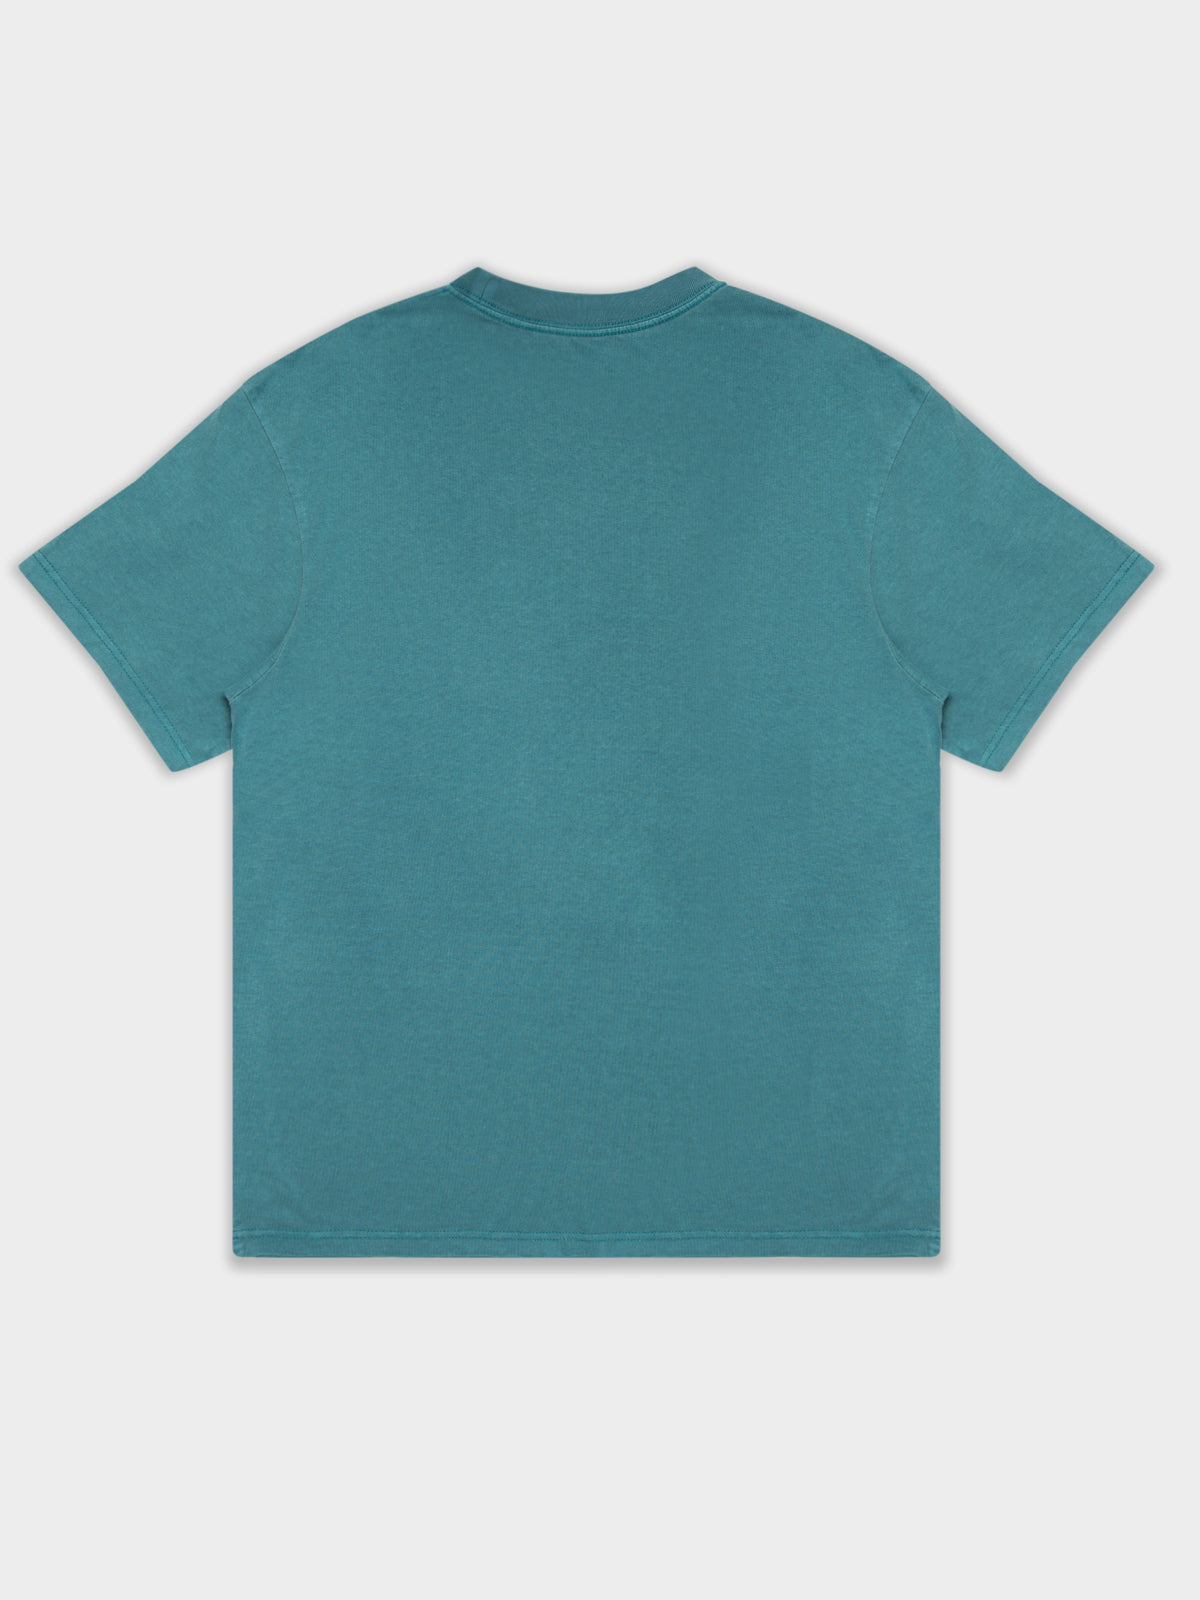 Charlotte Hornets T-Shirt in Faded Aqua